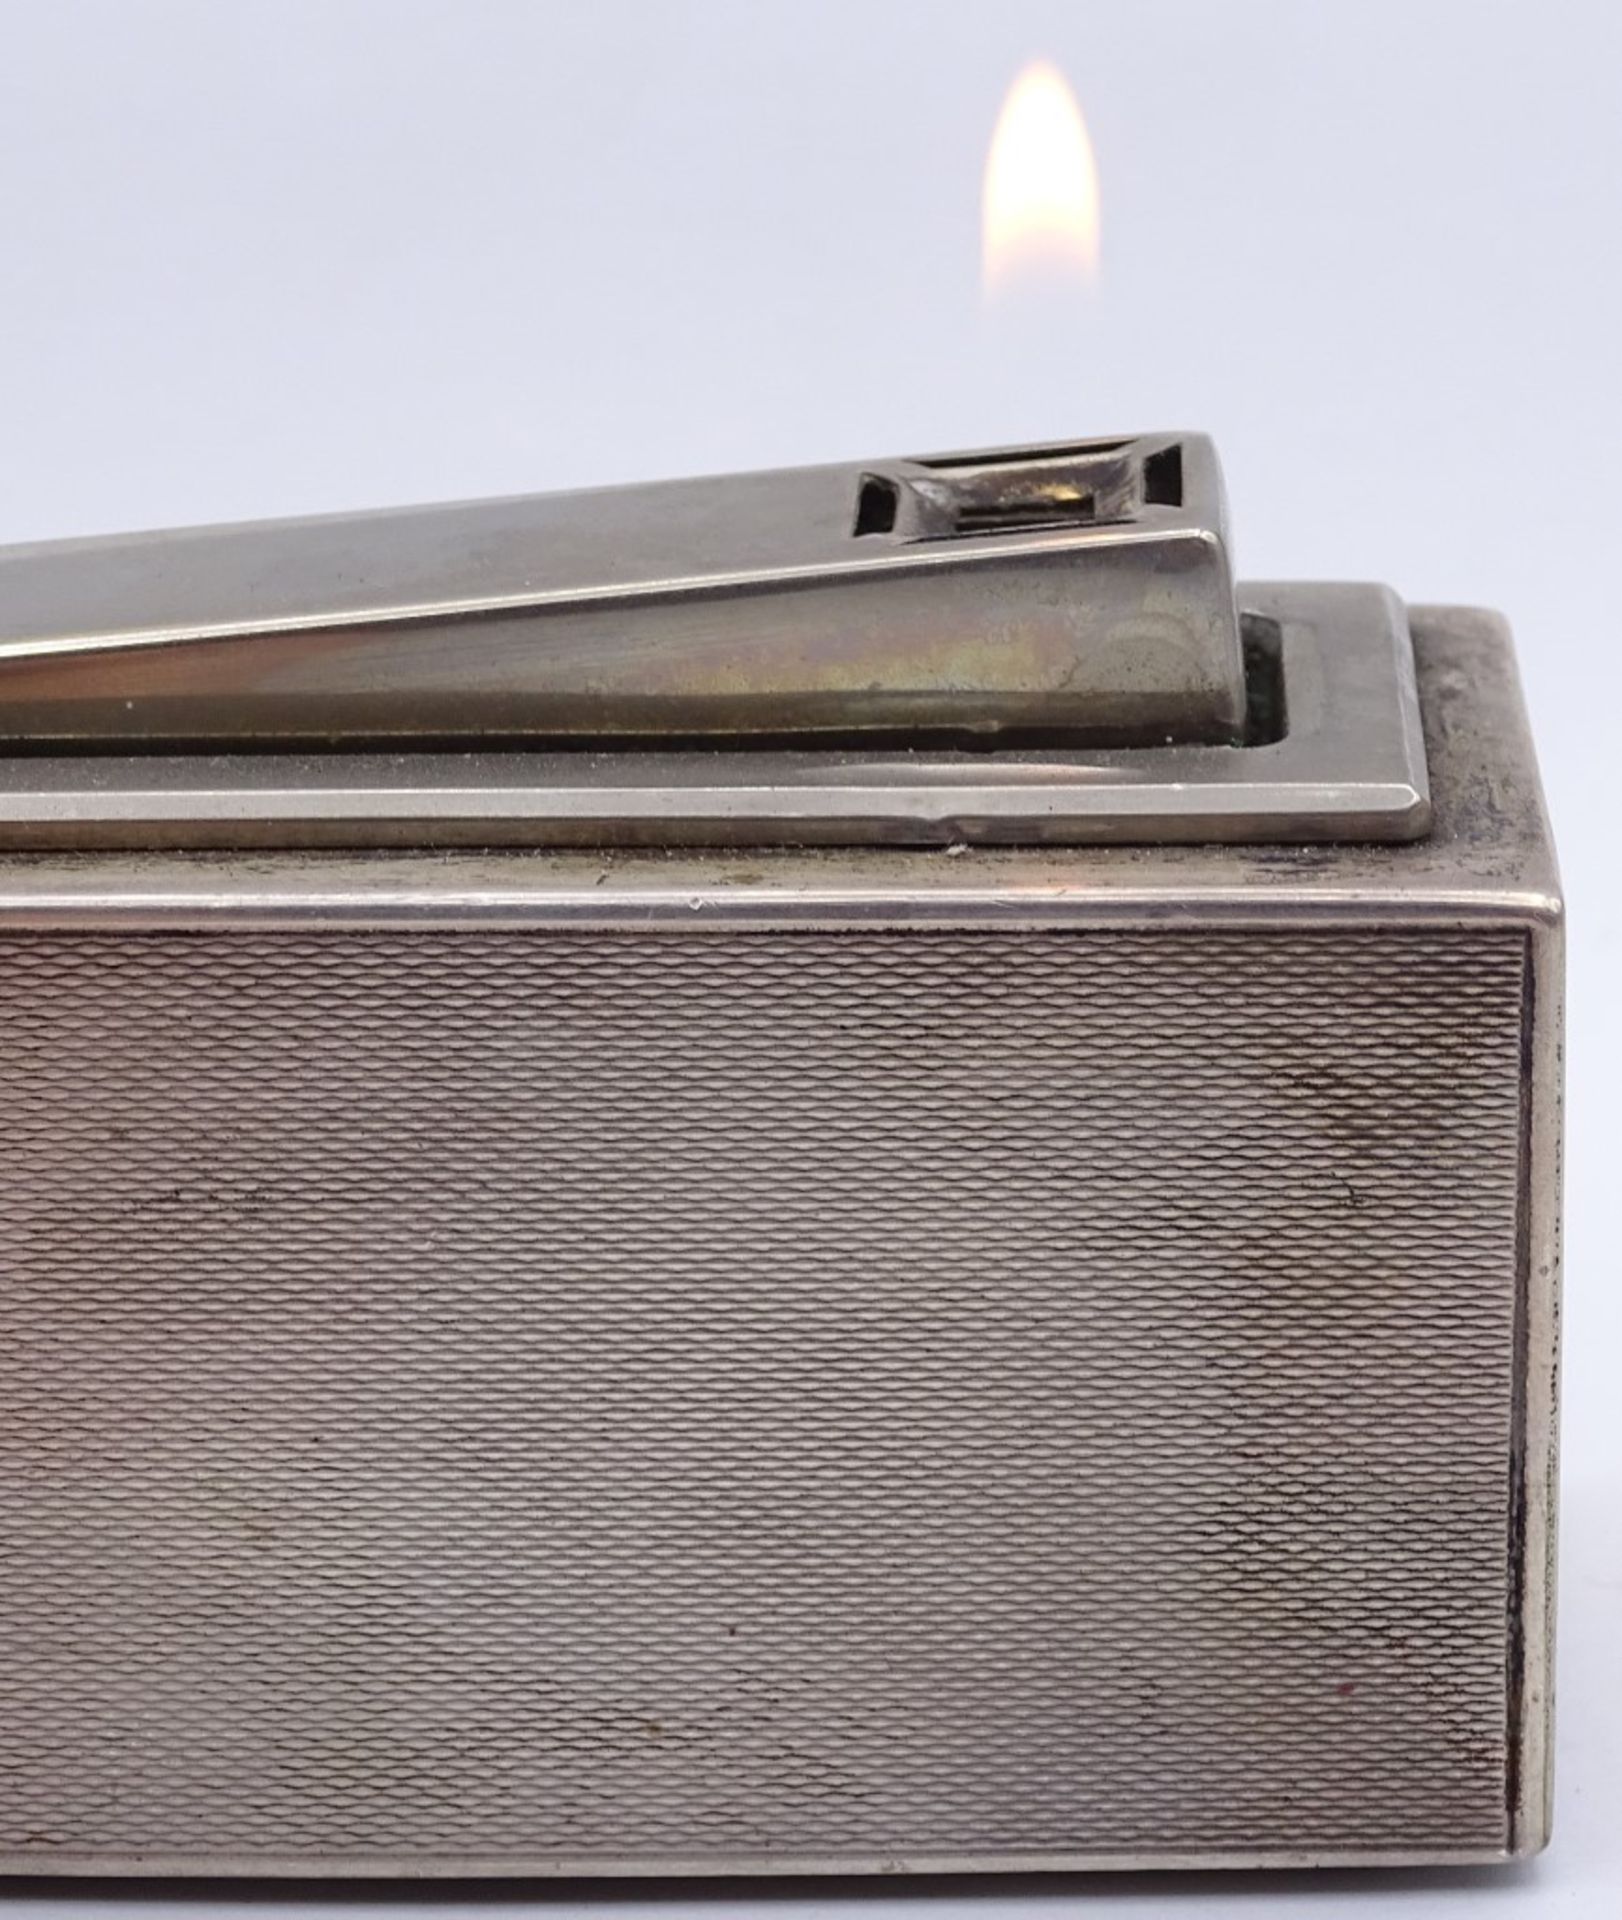 Tischfeuerzeug in Sterling Silber Gehäuse,Funktionstüchtig,L-10,4cm,H-6,0 - Bild 4 aus 5